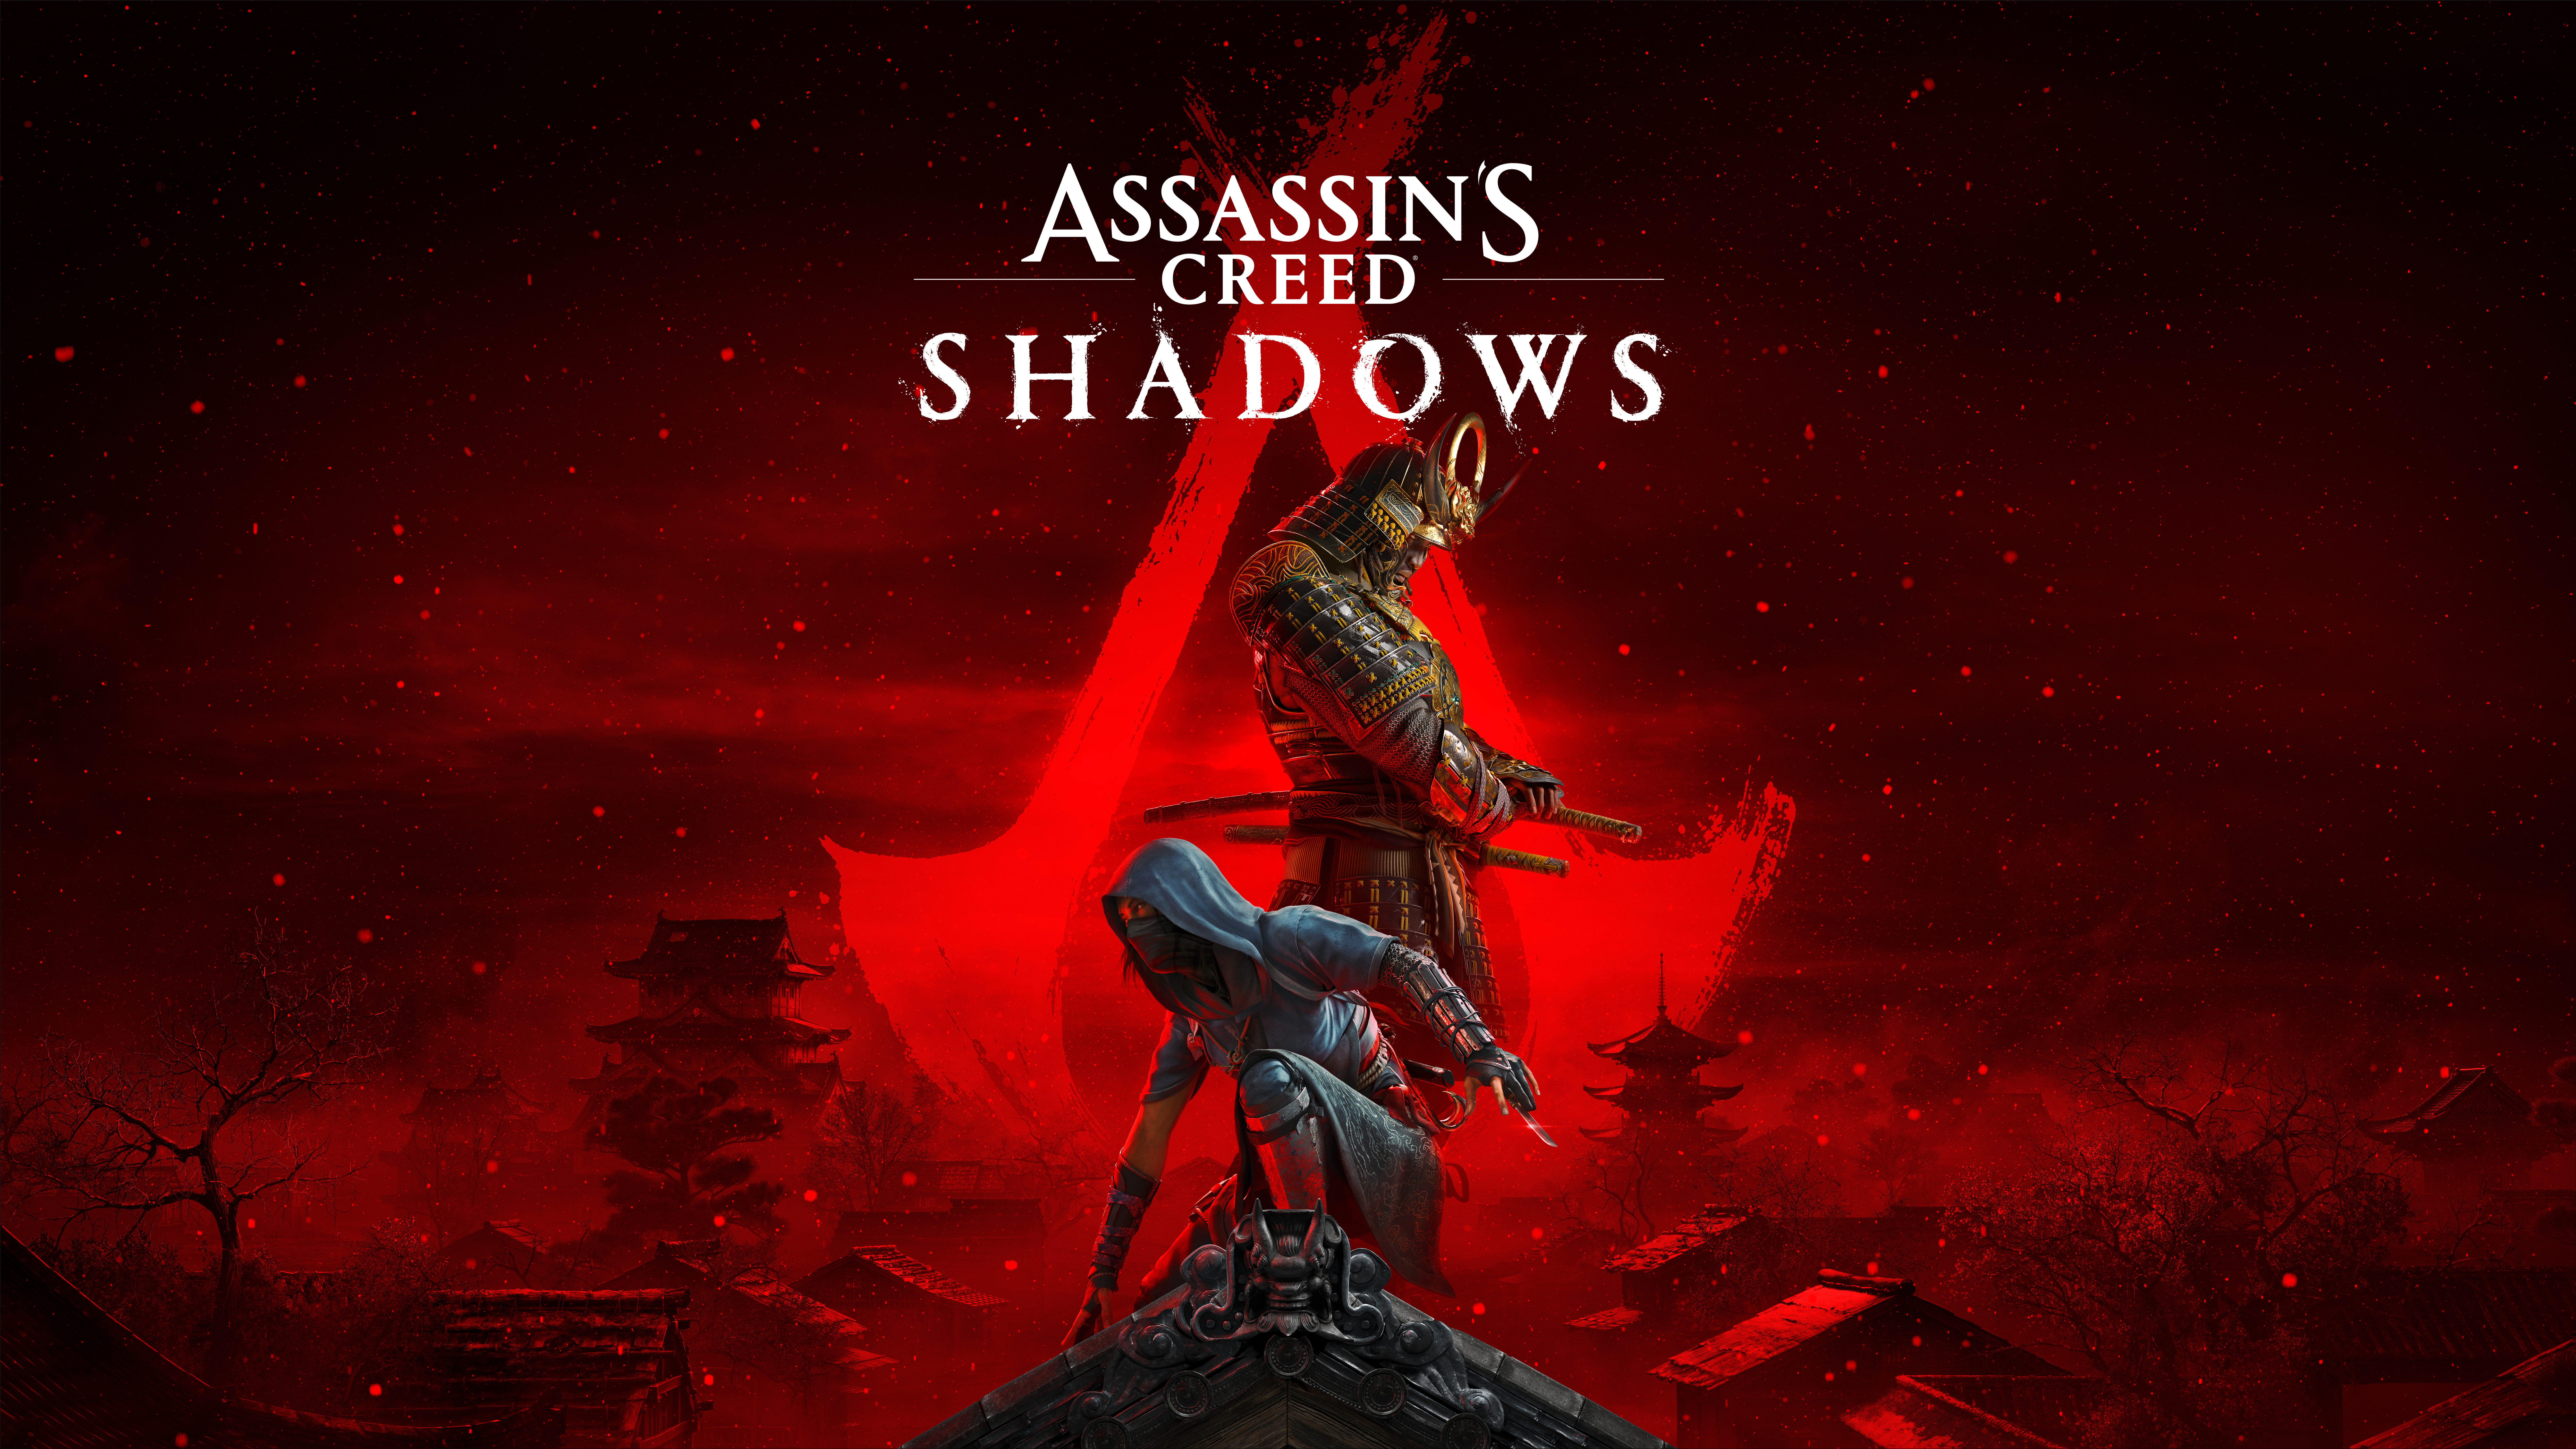 Assassin's Creed Shadows déçoit déjà beaucoup avant son lancement